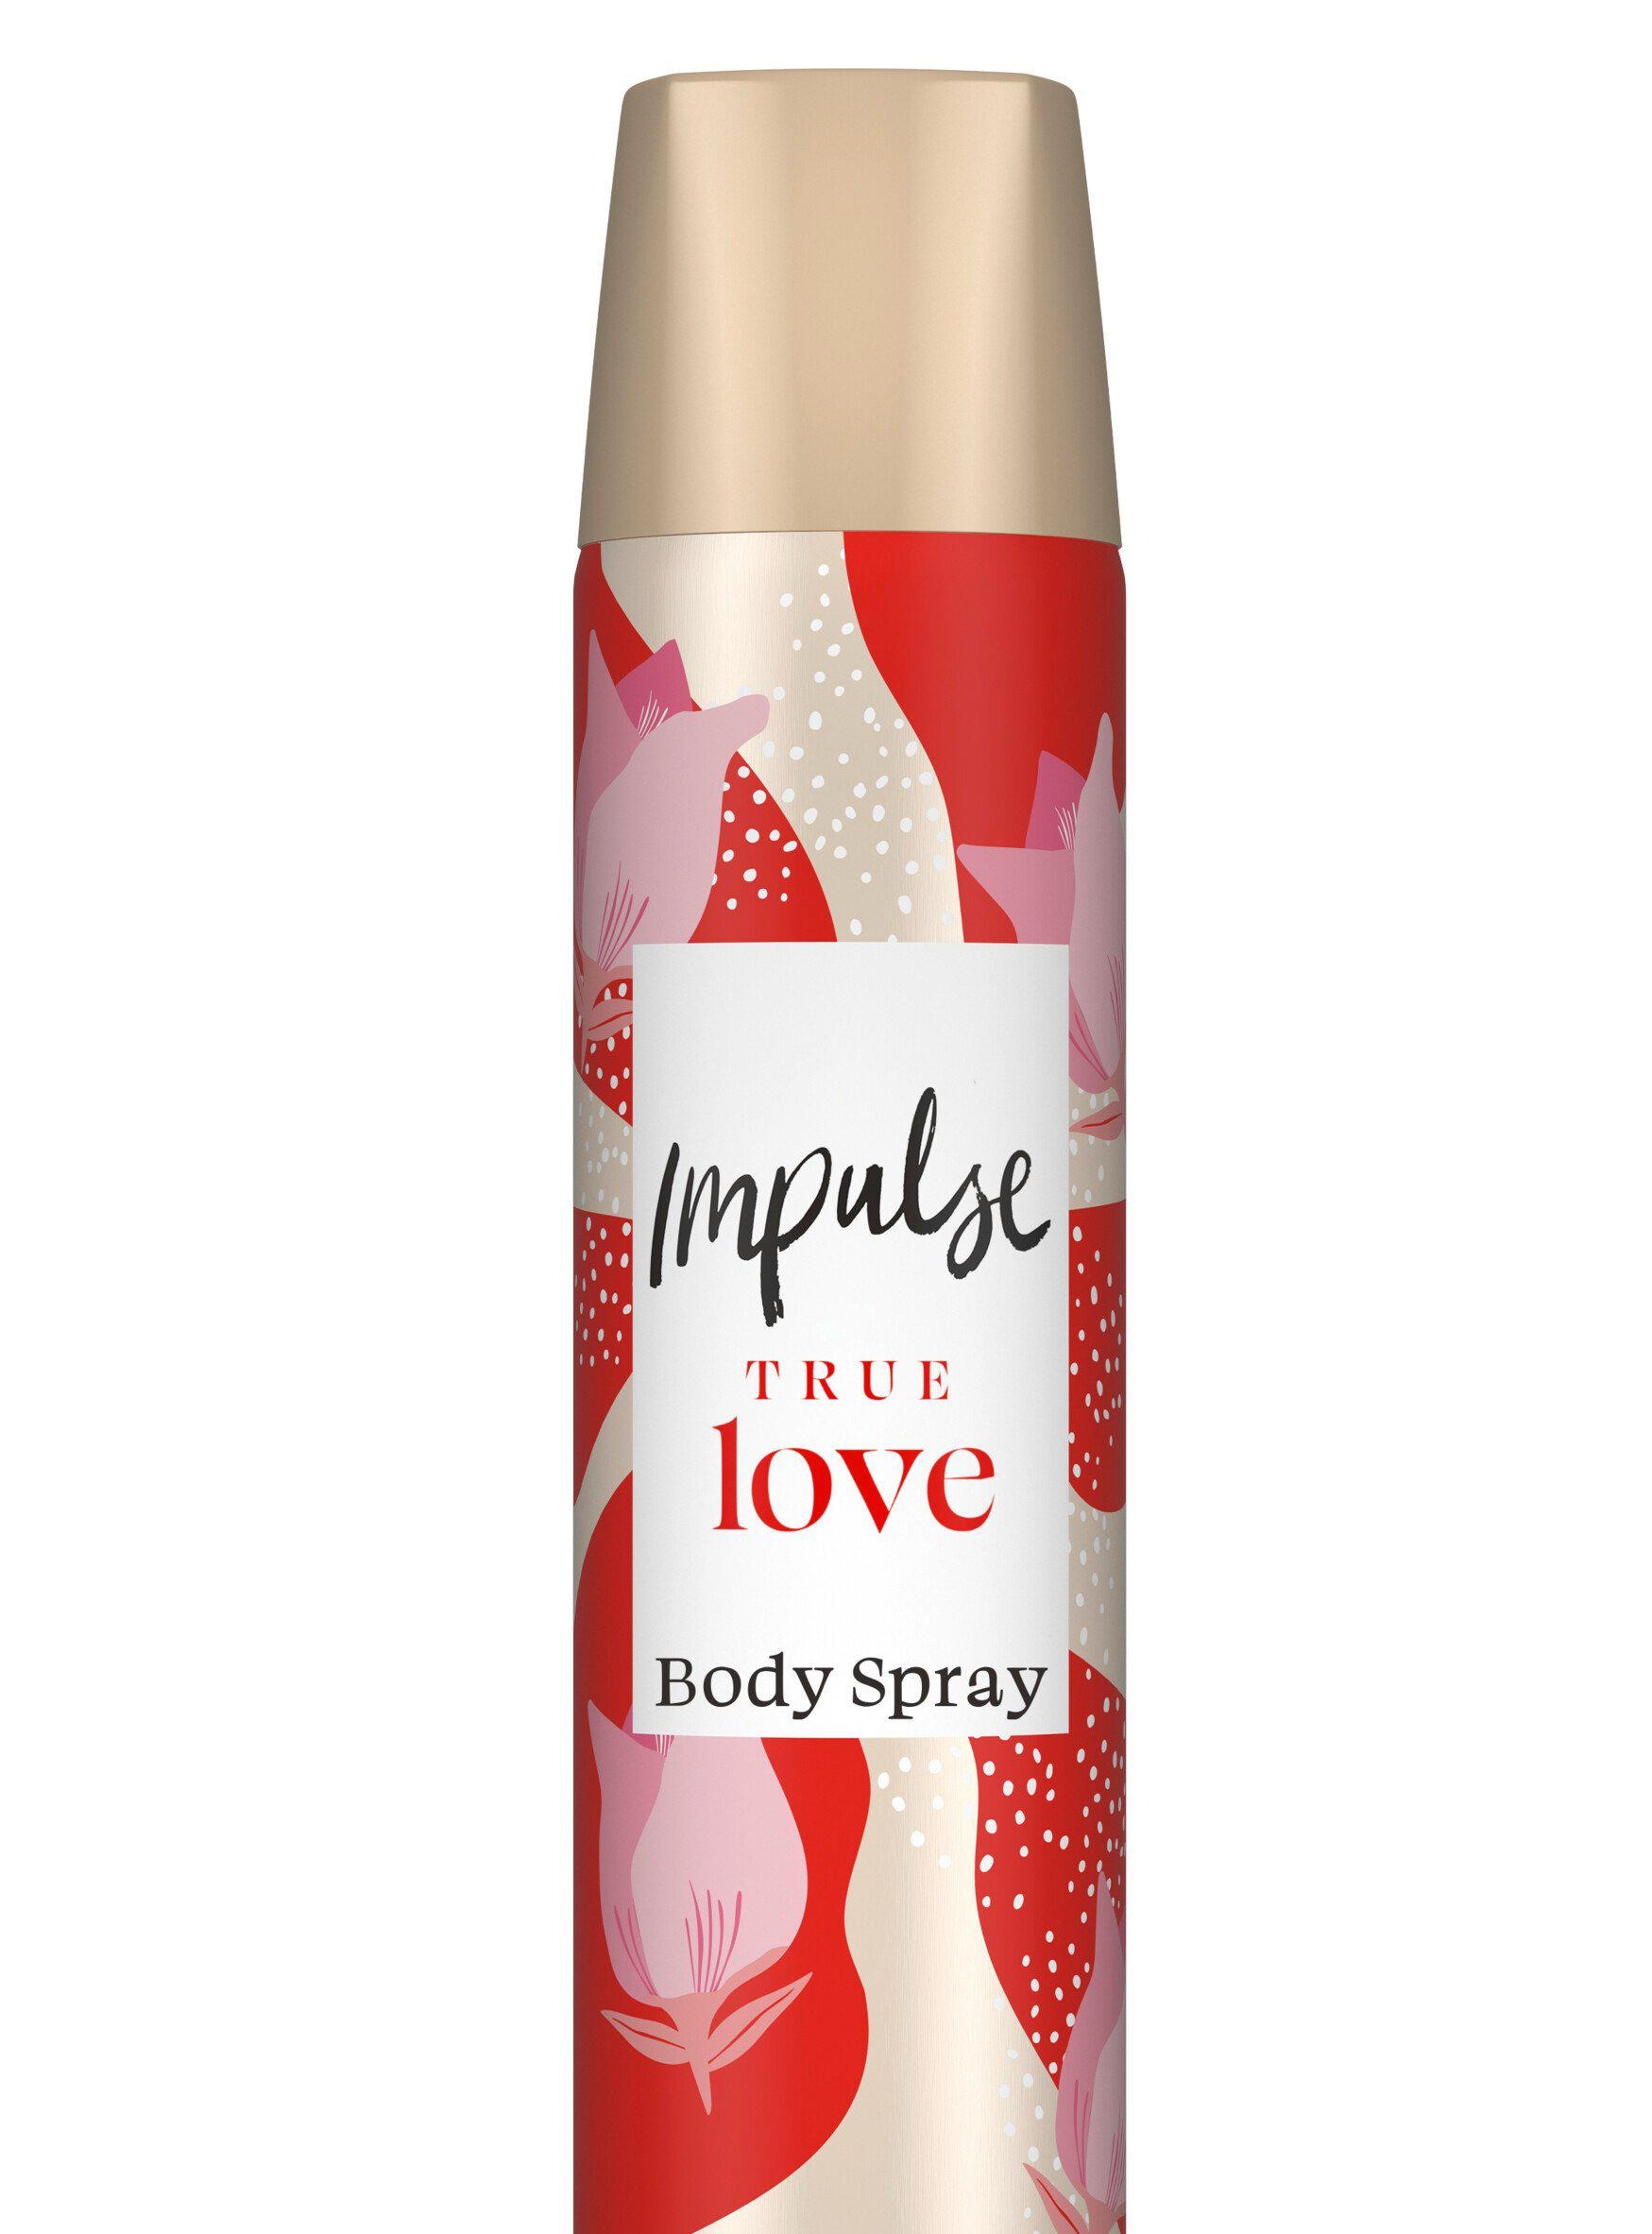 Das True Love-Körperspray von Impulse kostet bei Sainsbury's nur 1 £